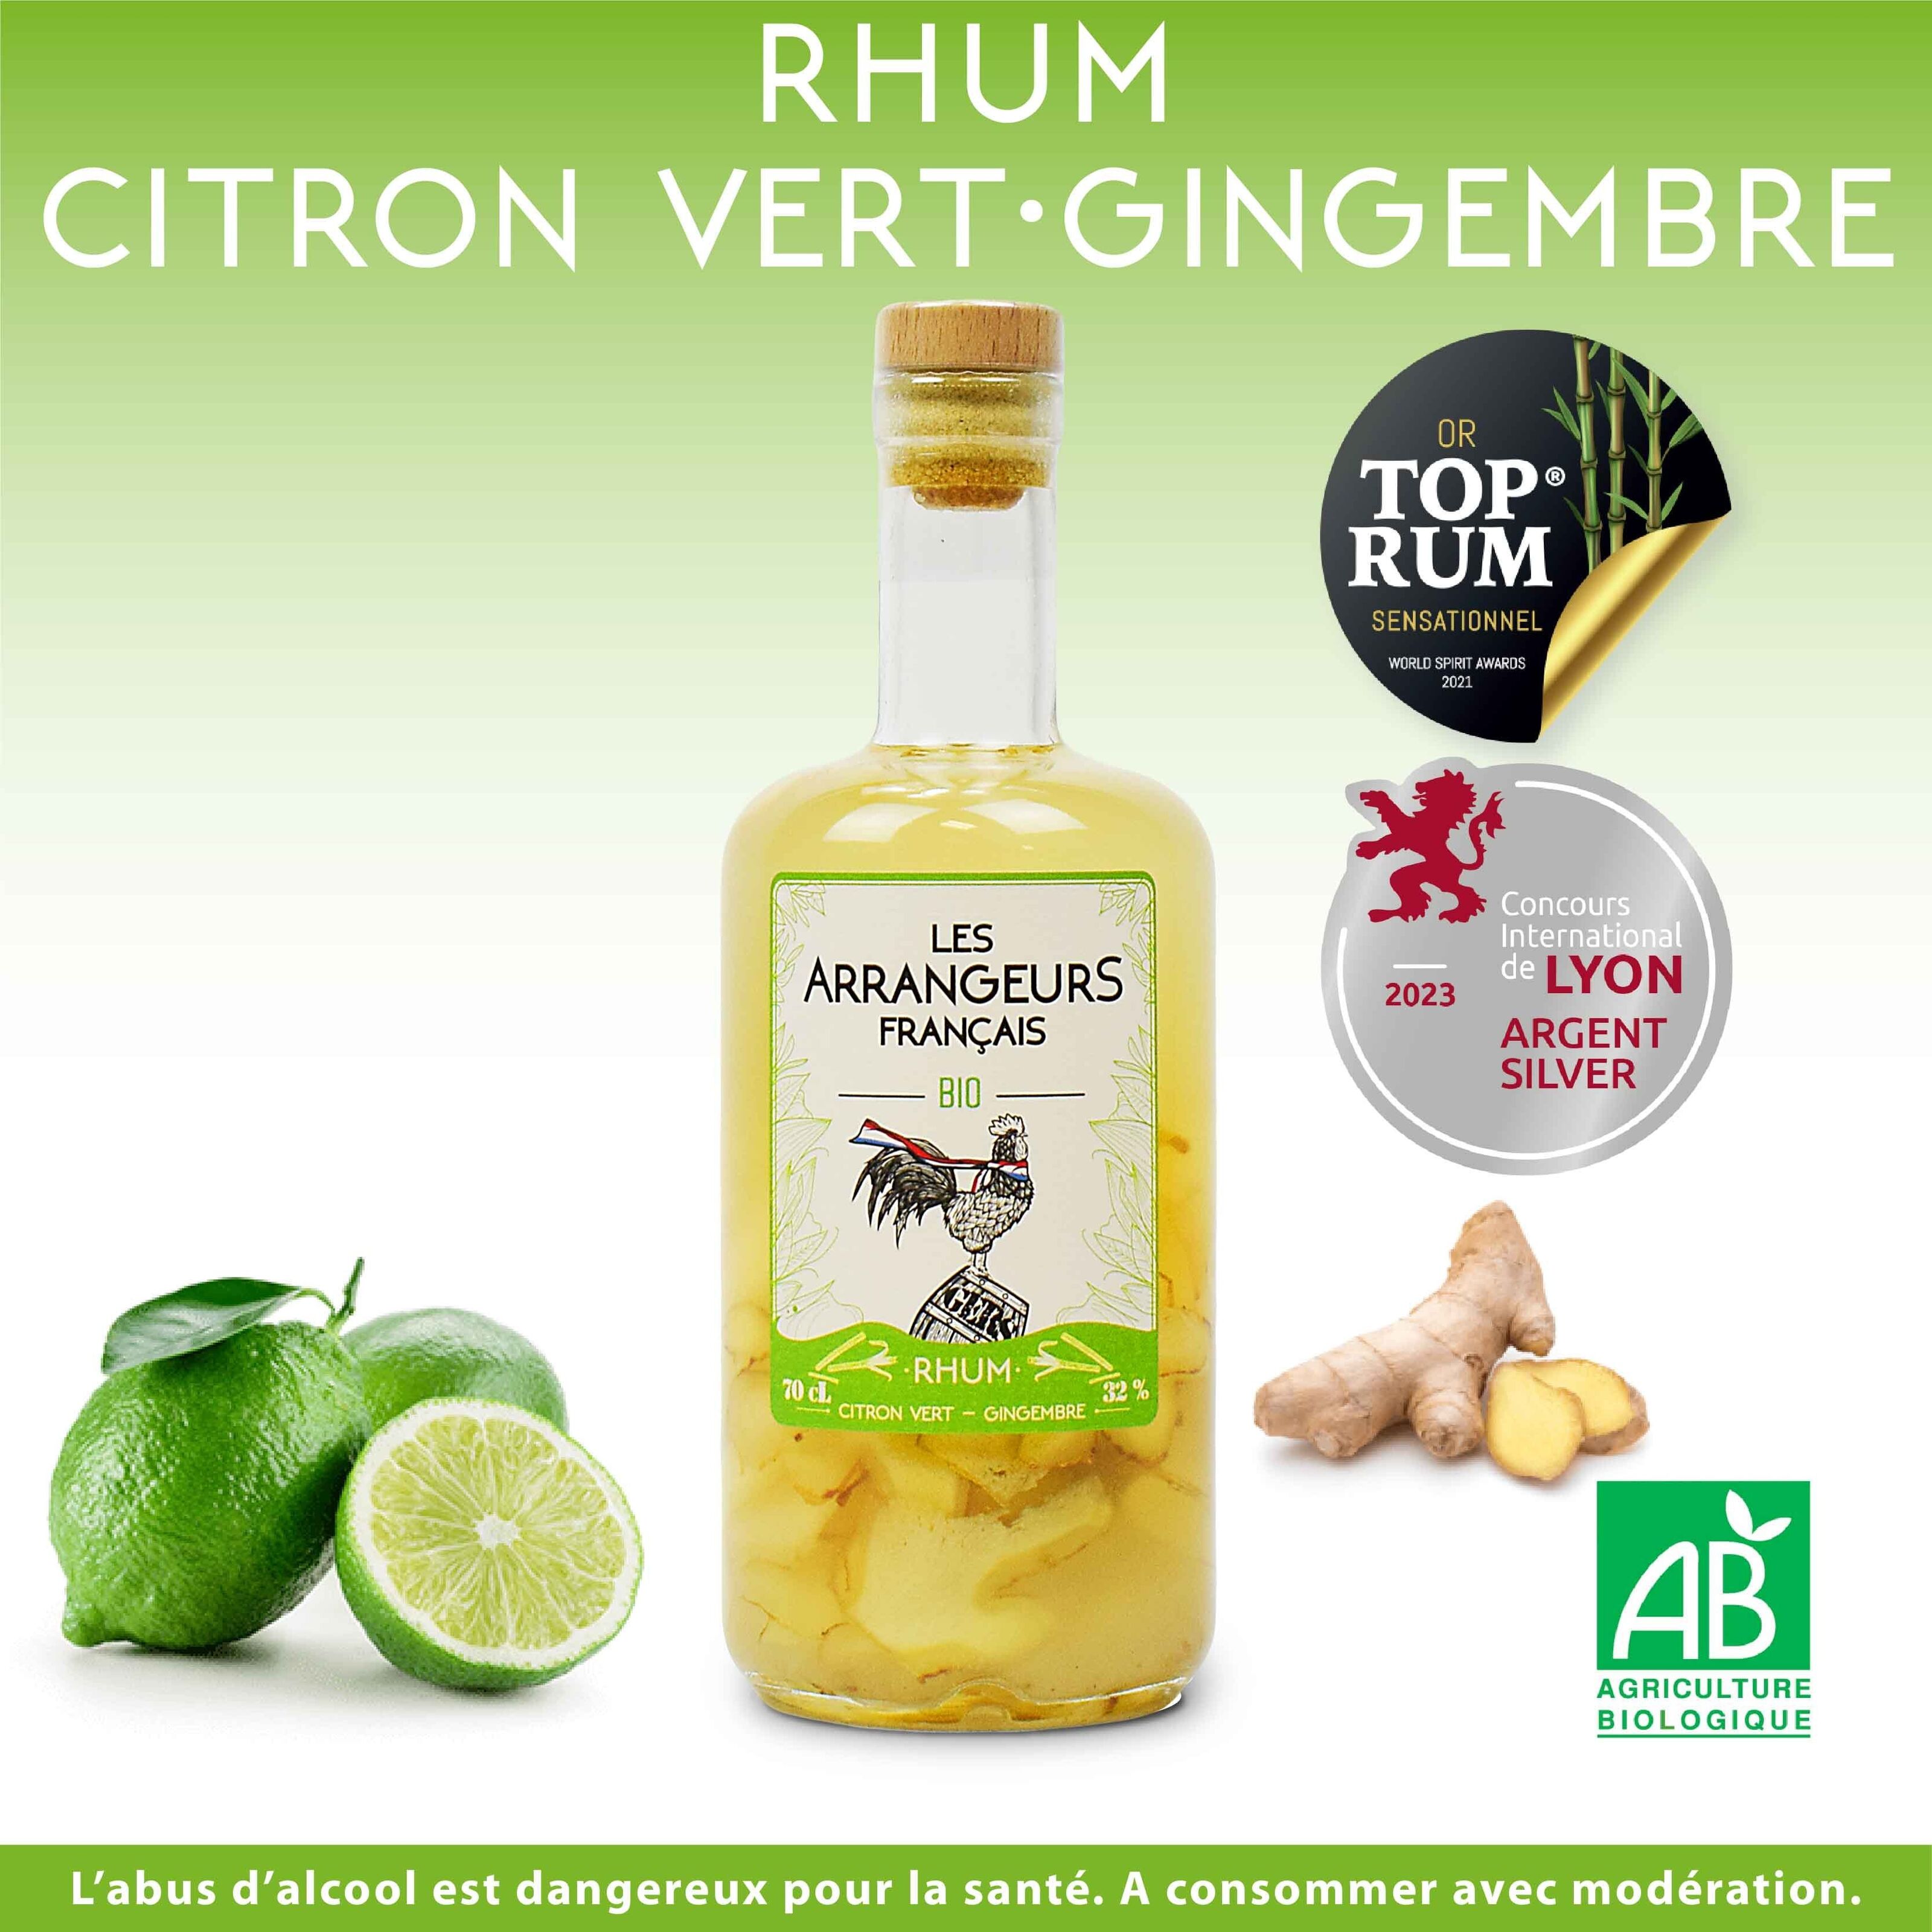 Chaleur des Îles - Gingembre/Citron vert — C'Rhum